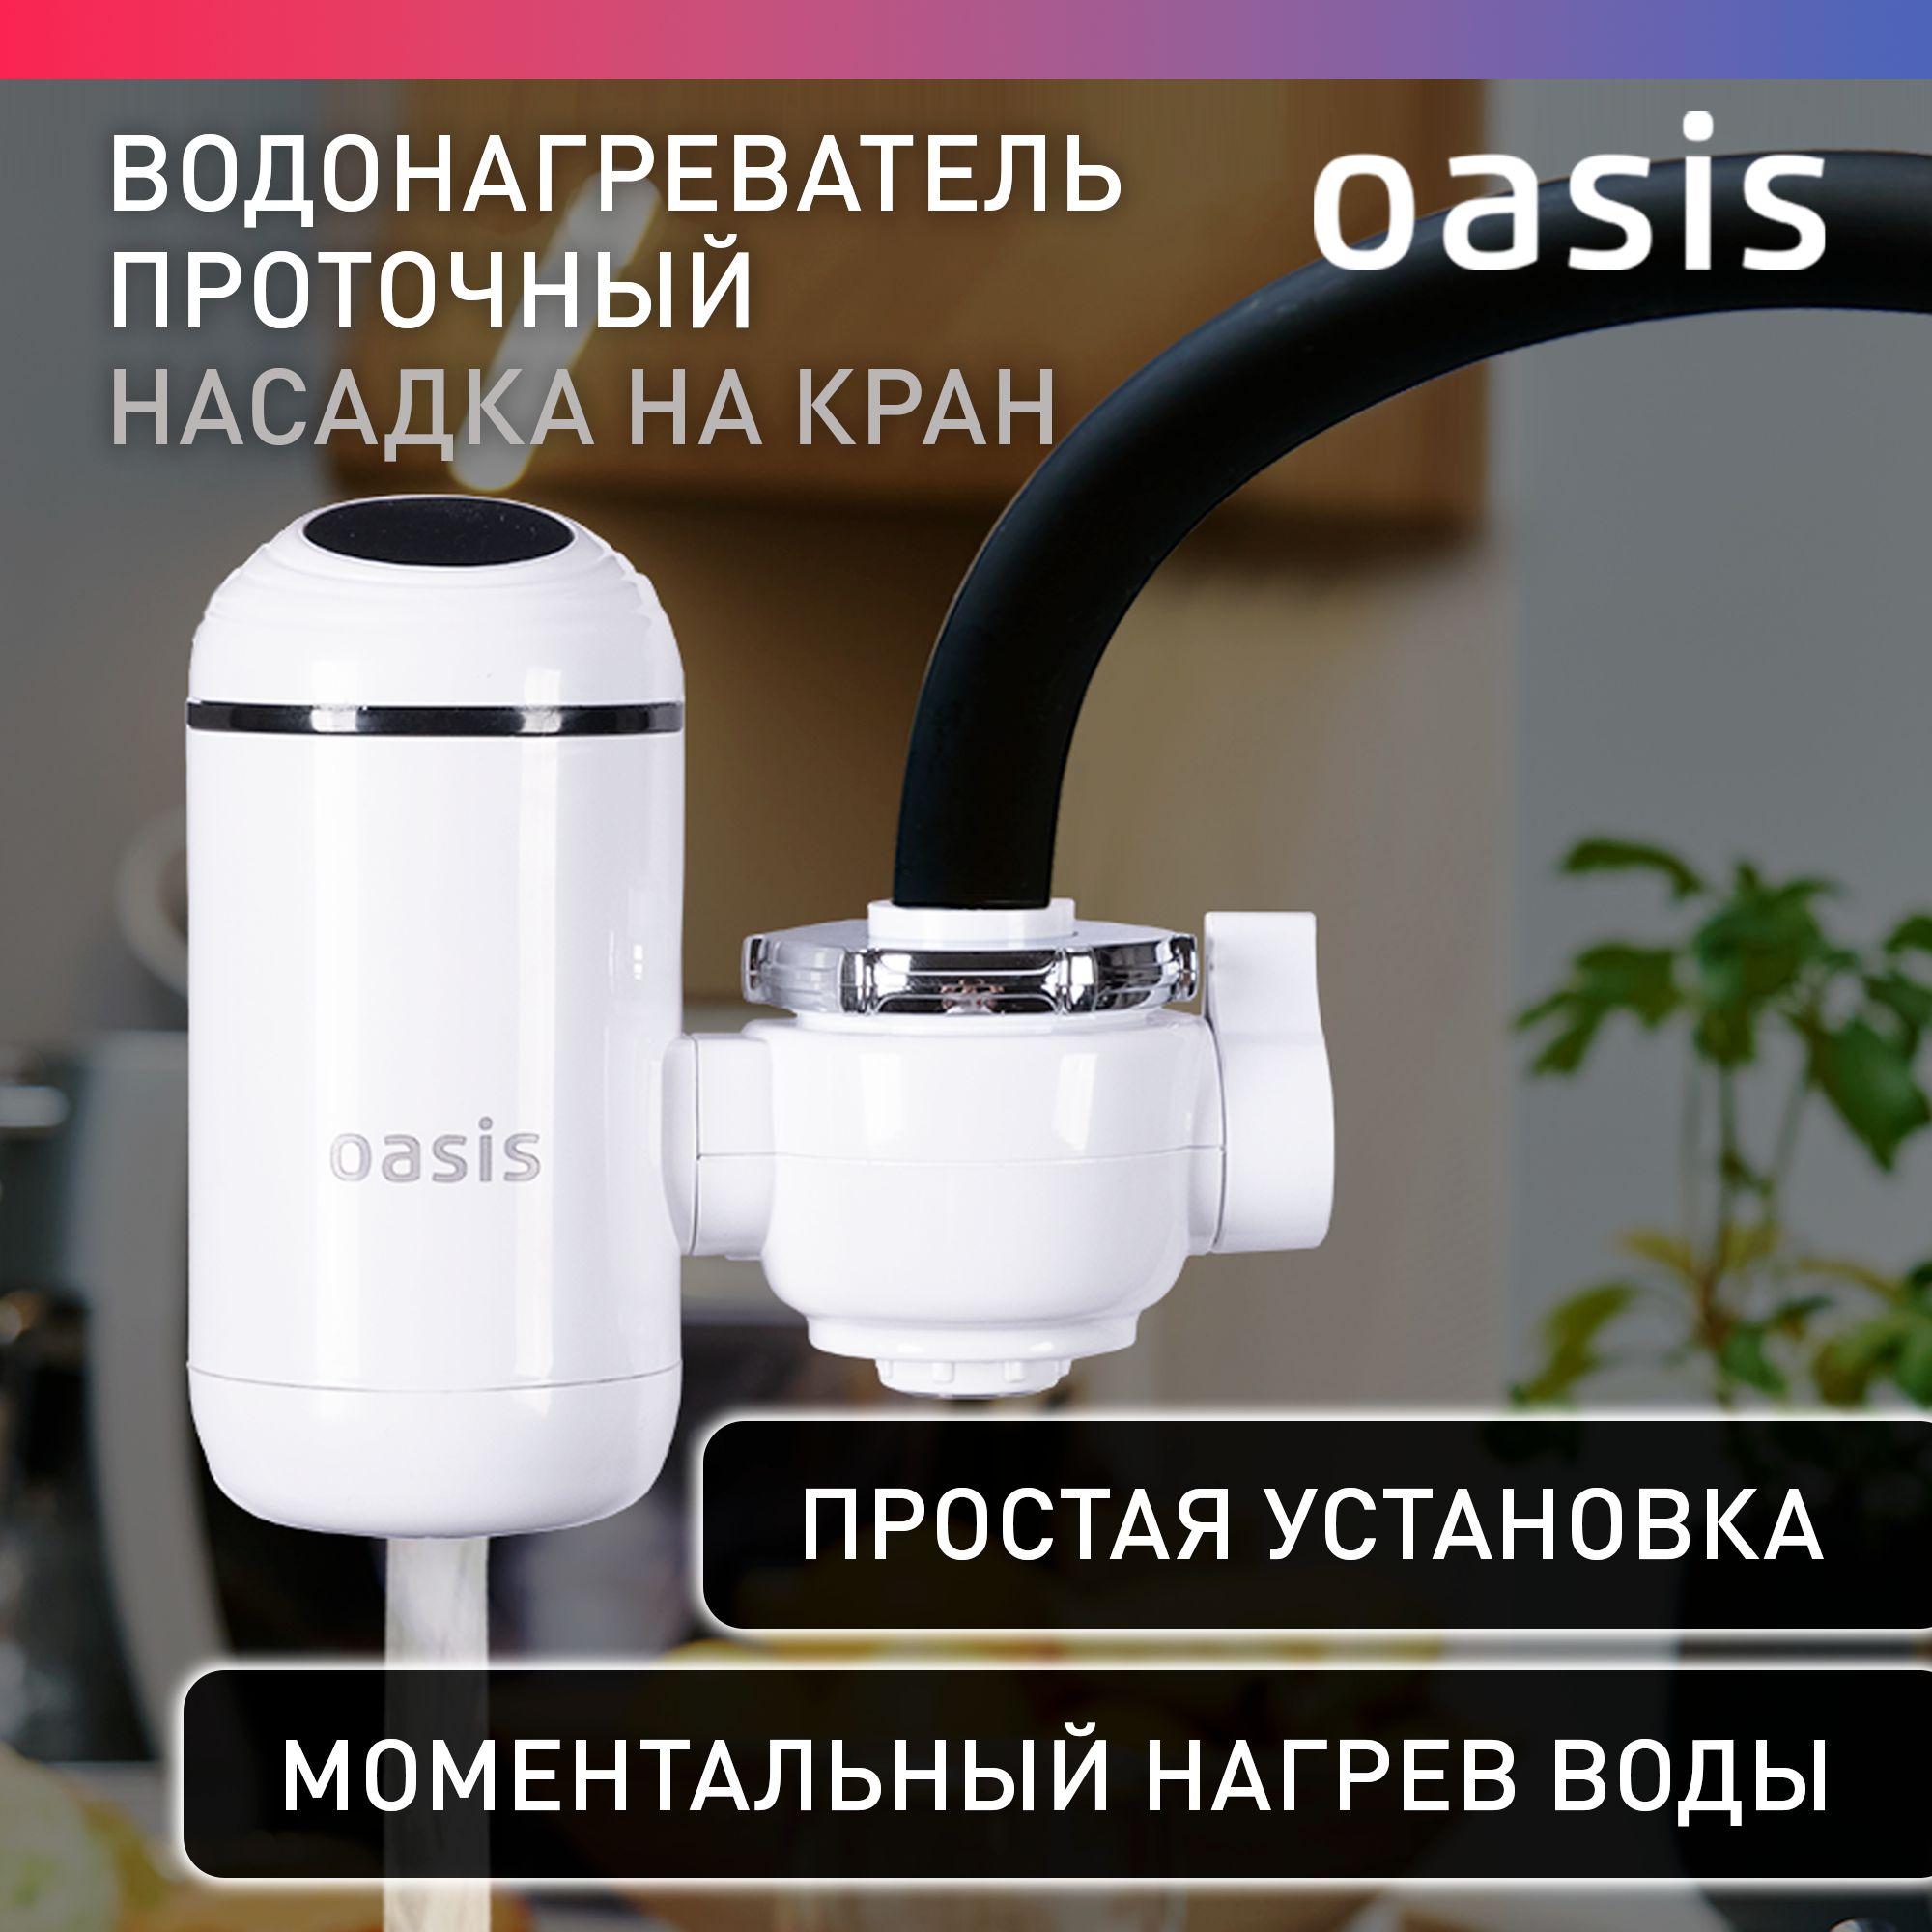 Кран водонагреватель проточный электрический Oasis NP-W / смеситель проточный водонагреватель, кран для кухни, для дачи